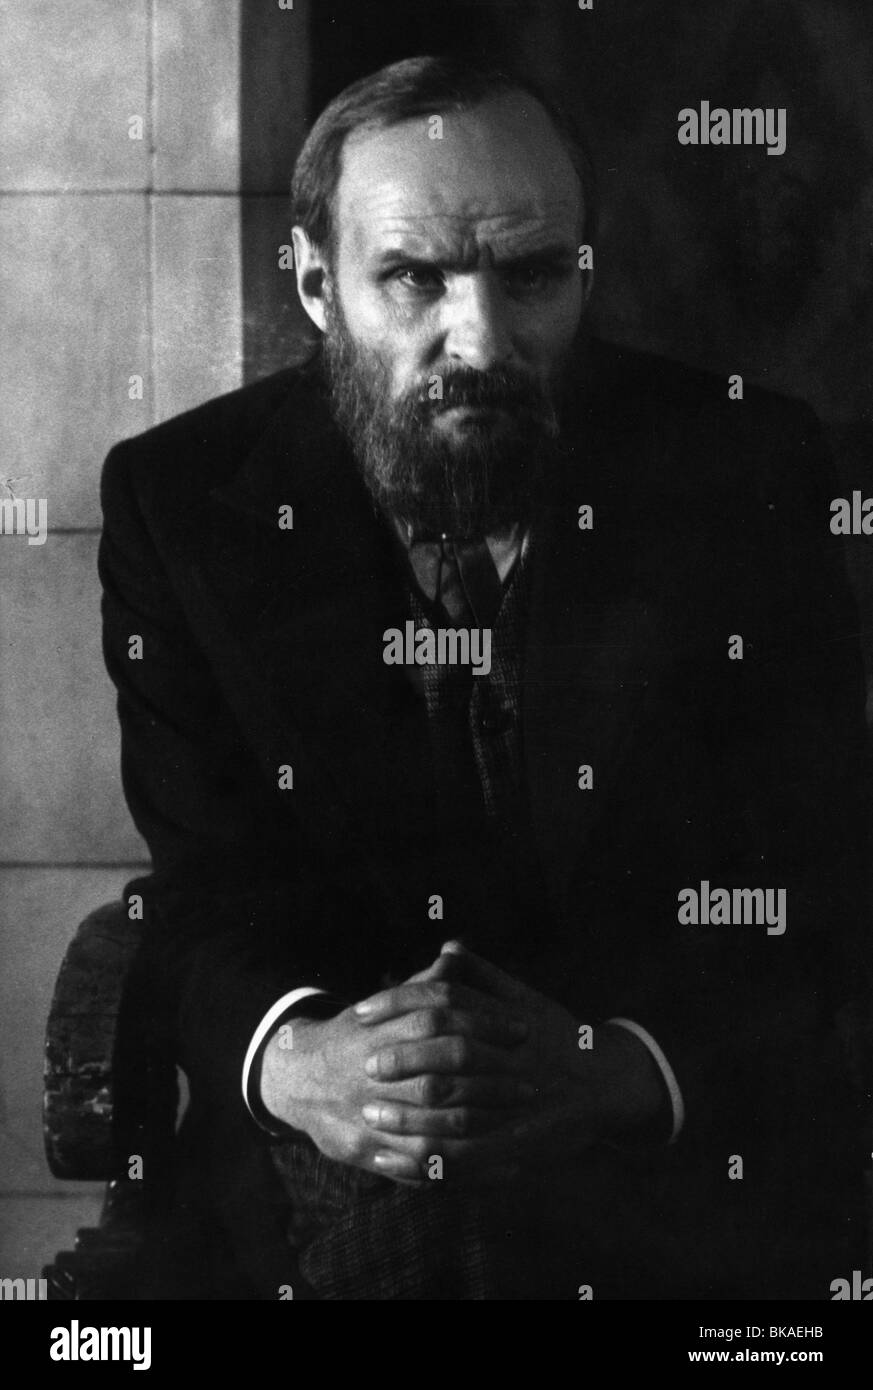 Dvadtsat shest dney iz zhizni Dostoevskogo Twenty Six Days from Life of Dostoyevsky Year:1981 Soviet Union Director Aleksandr Stock Photo